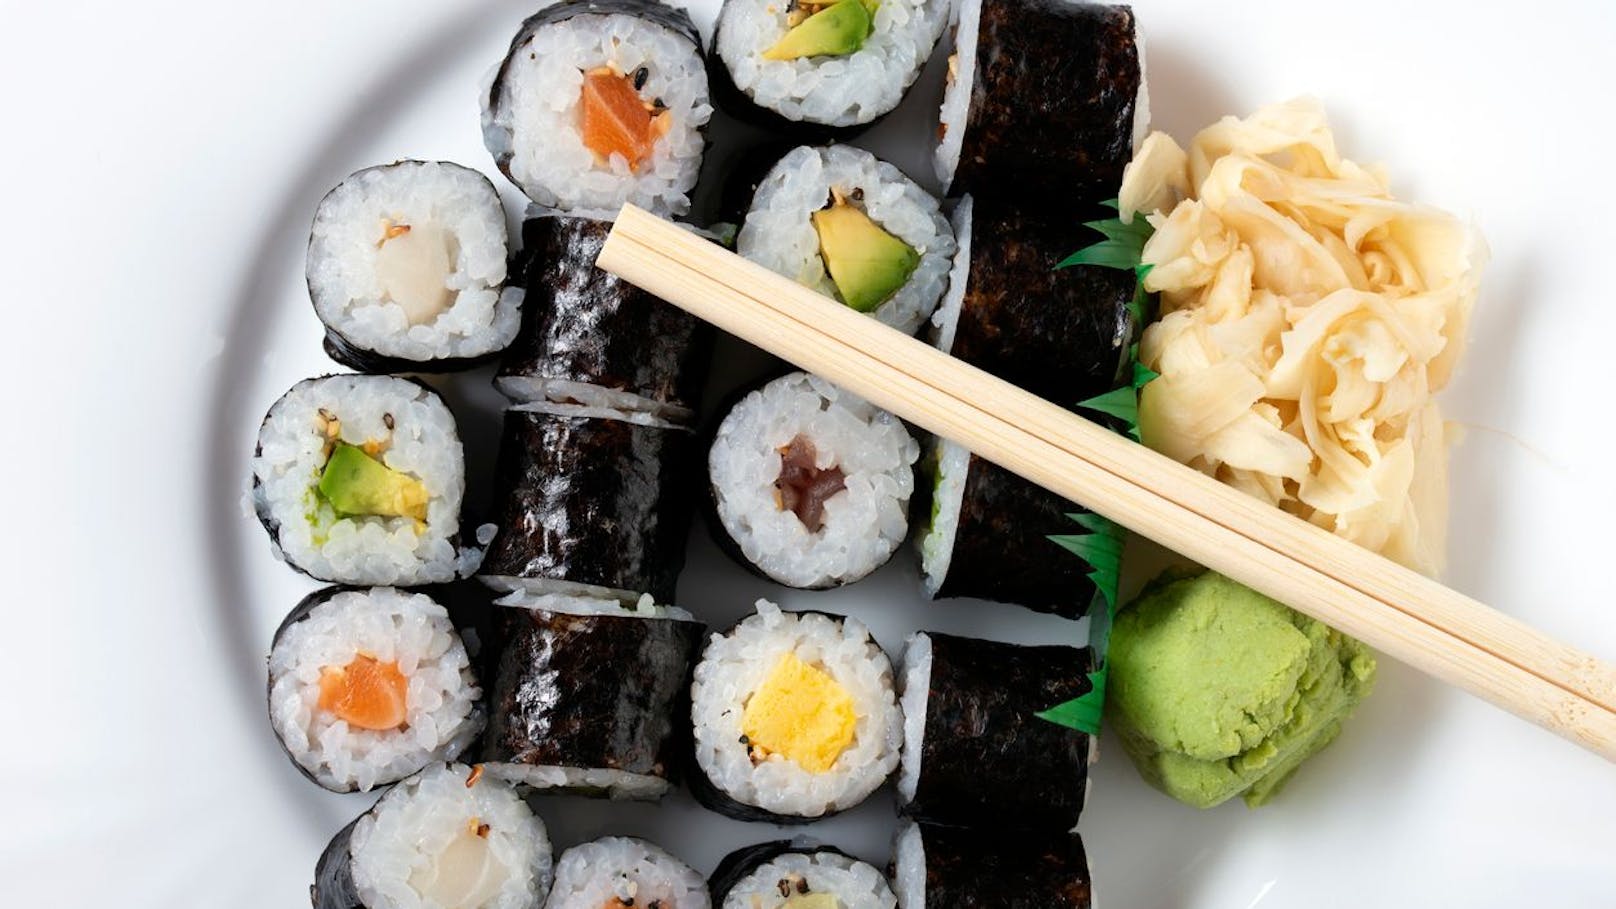 Diese Sushi-Beilage verbessert das Gedächtnis erheblich